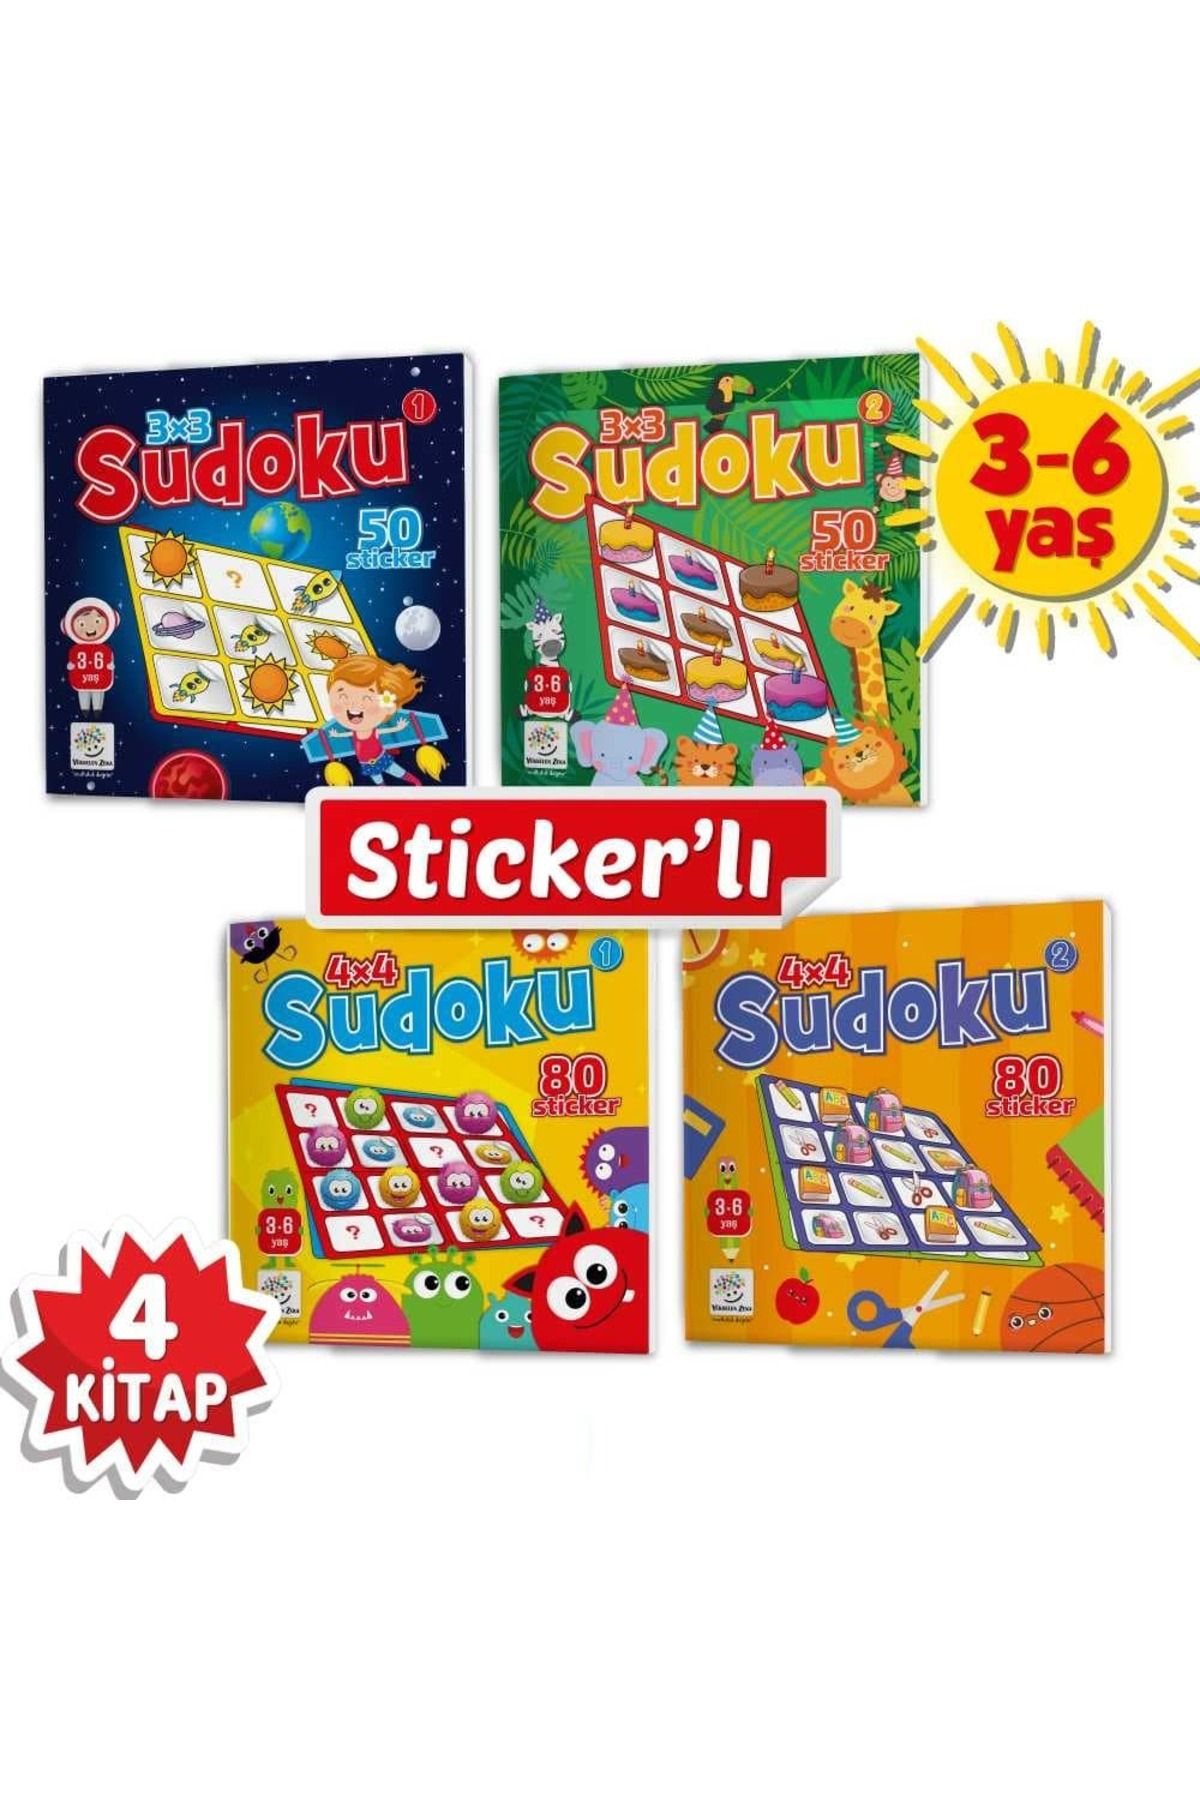 Yükselen Zeka Yayınları Stickerli Sudoku Serisi (3-6 Yaş) - Dikkat Geliştiren Bulmacalar